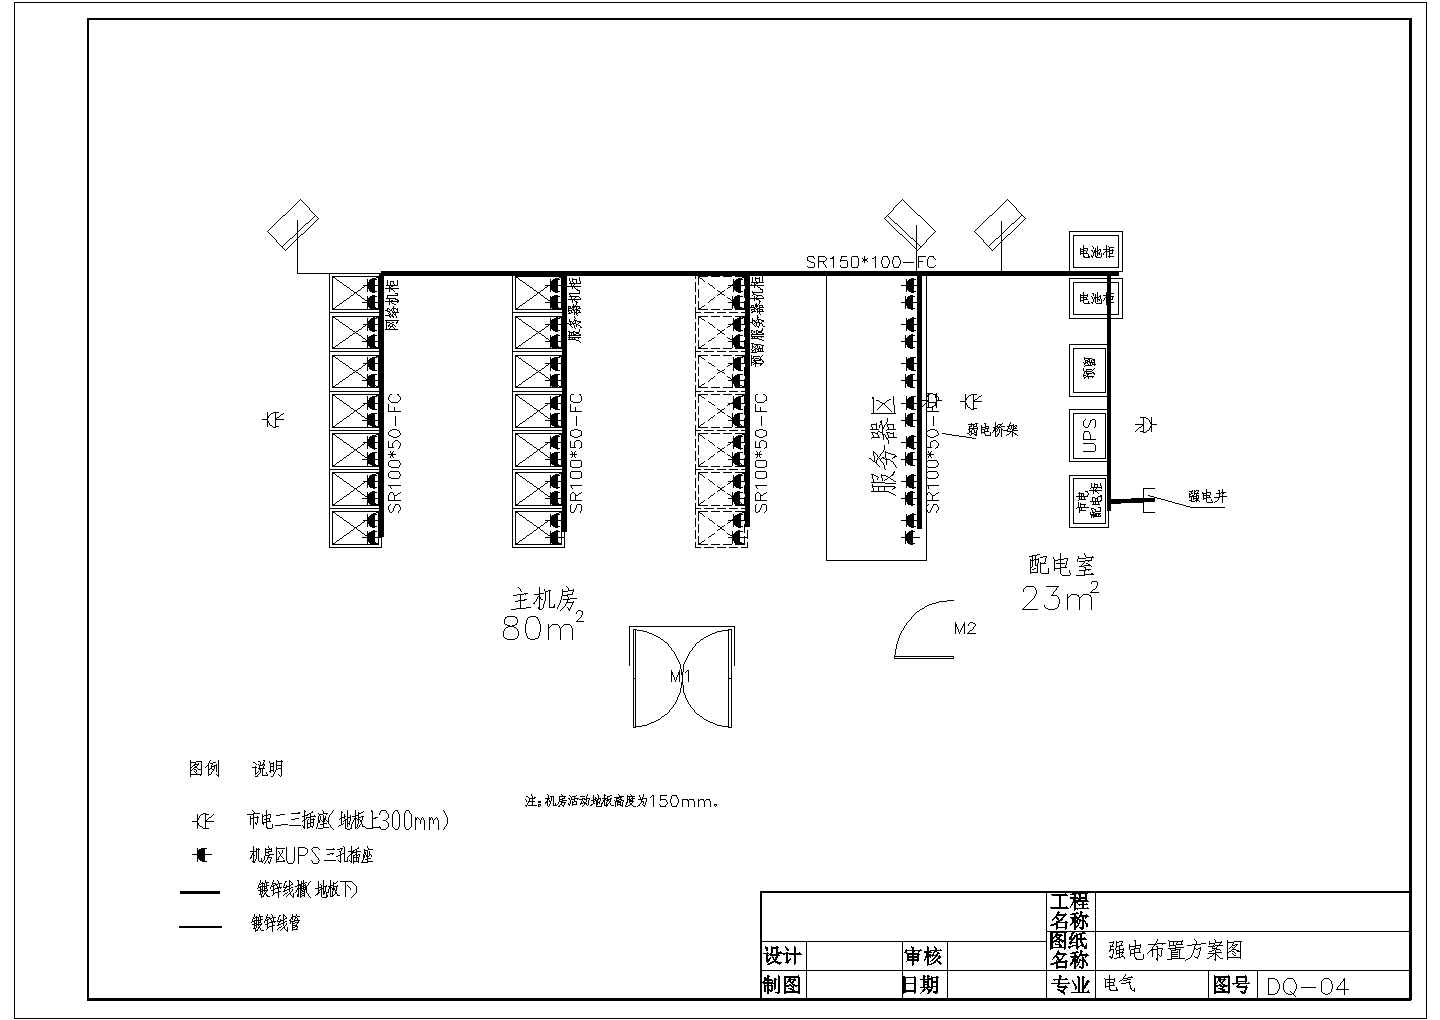 机房项目竣工设计方案全套CAD图纸